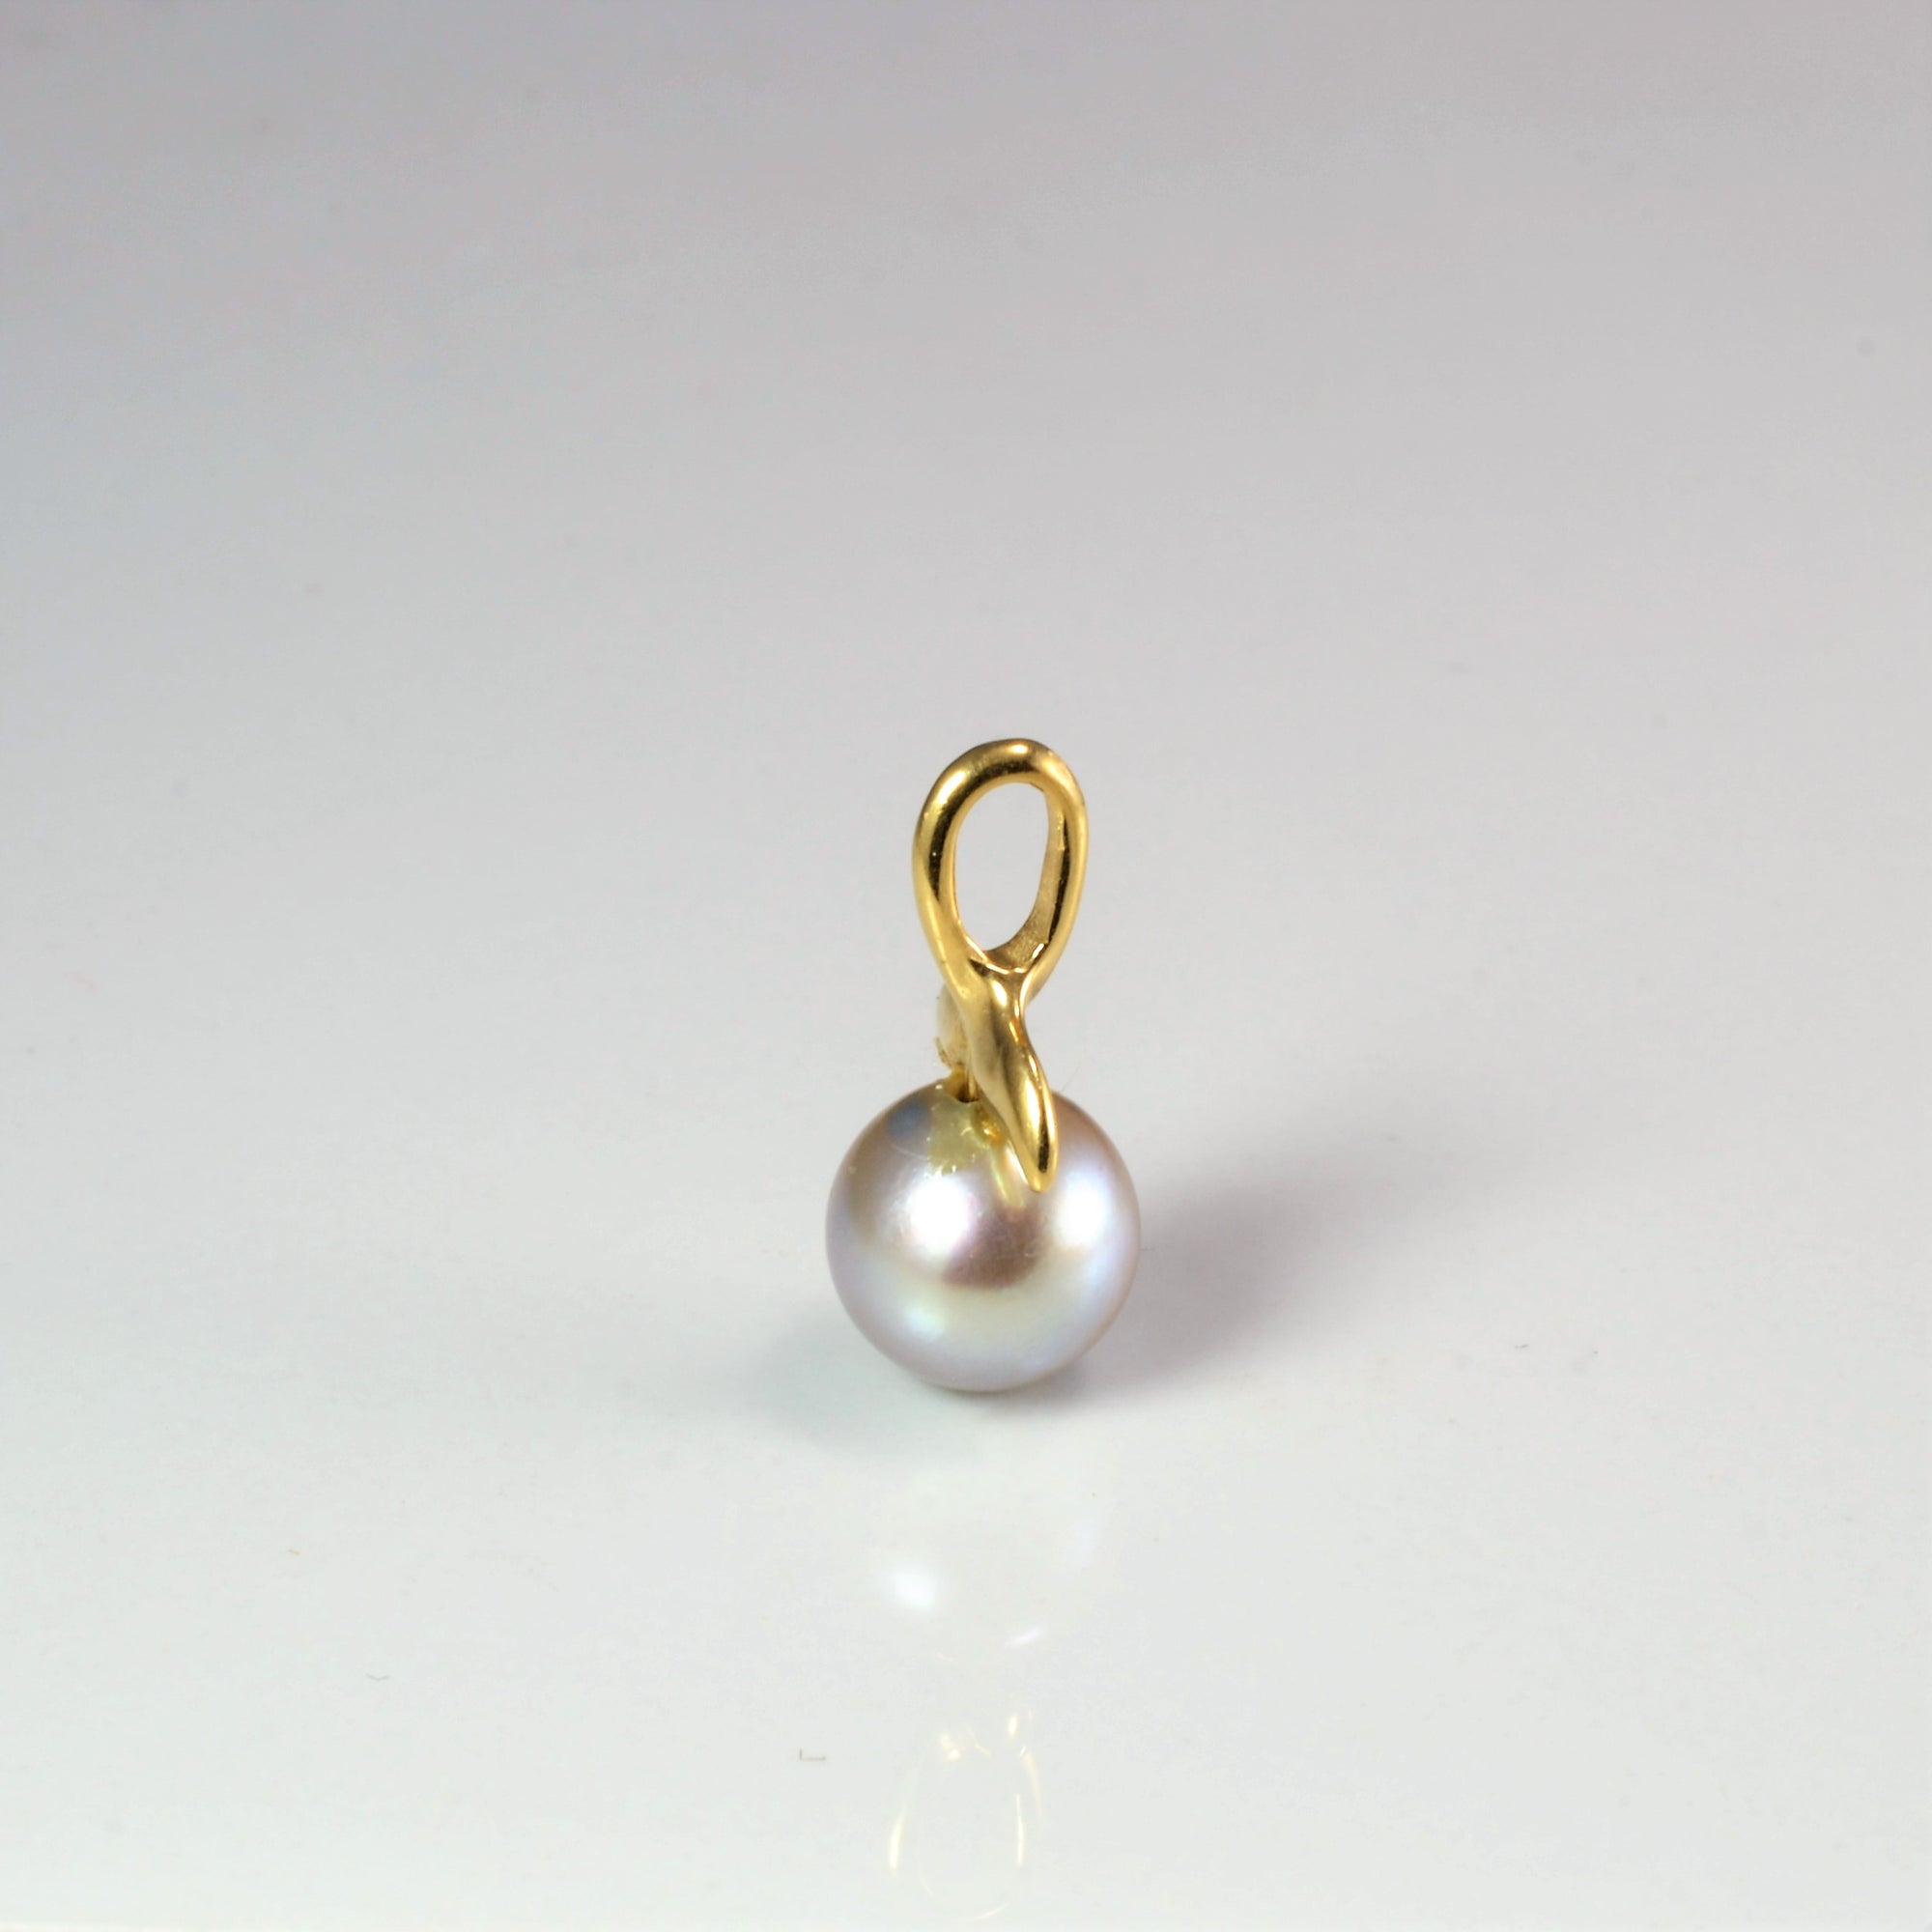 Gold Fin Pearl Pendant